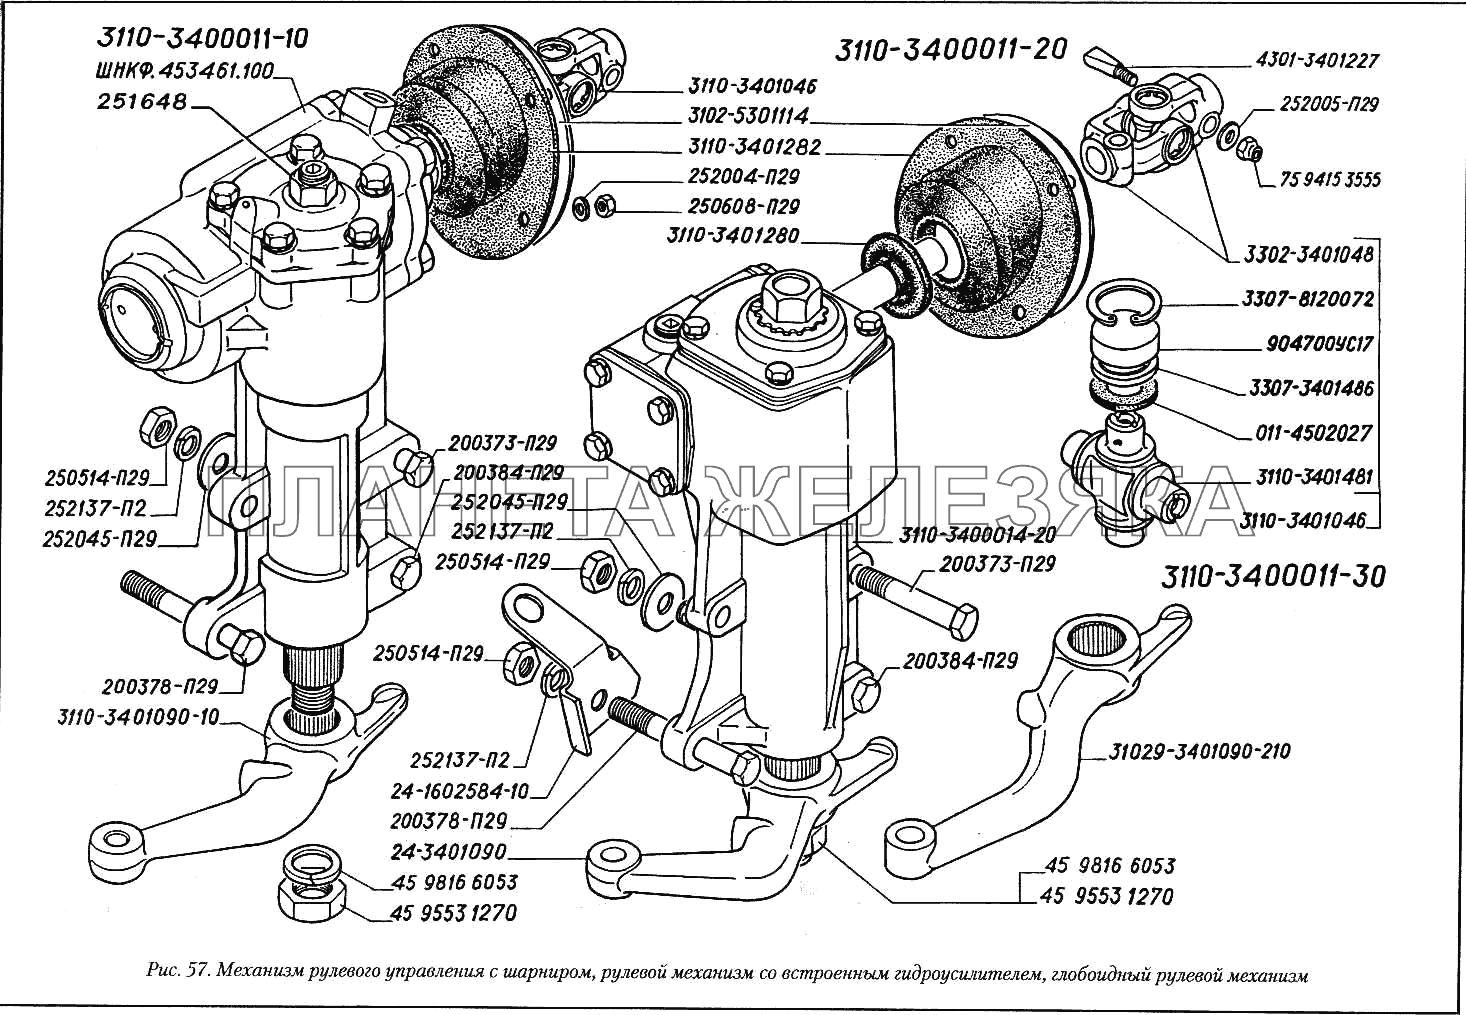 Механизм рулевого управления с шарниром рулевой механизм со встроенным гидроусилителем, глобоидный рулевой механизм ГАЗ-3110